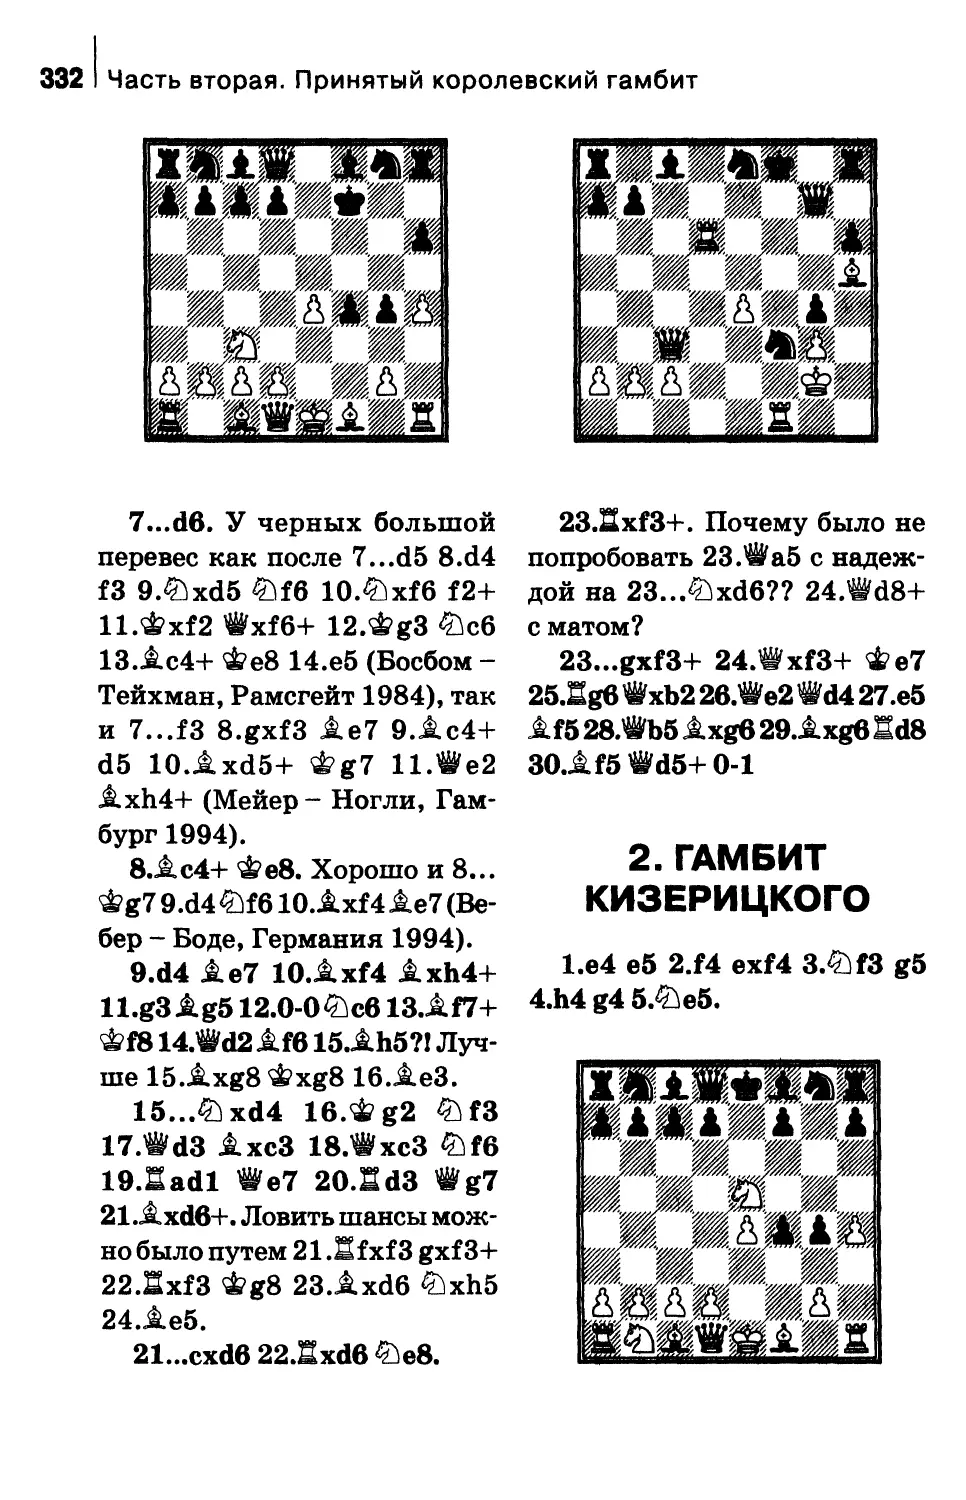 2. Гамбит Кизерицкого 4. h4 g4 5. Ке5